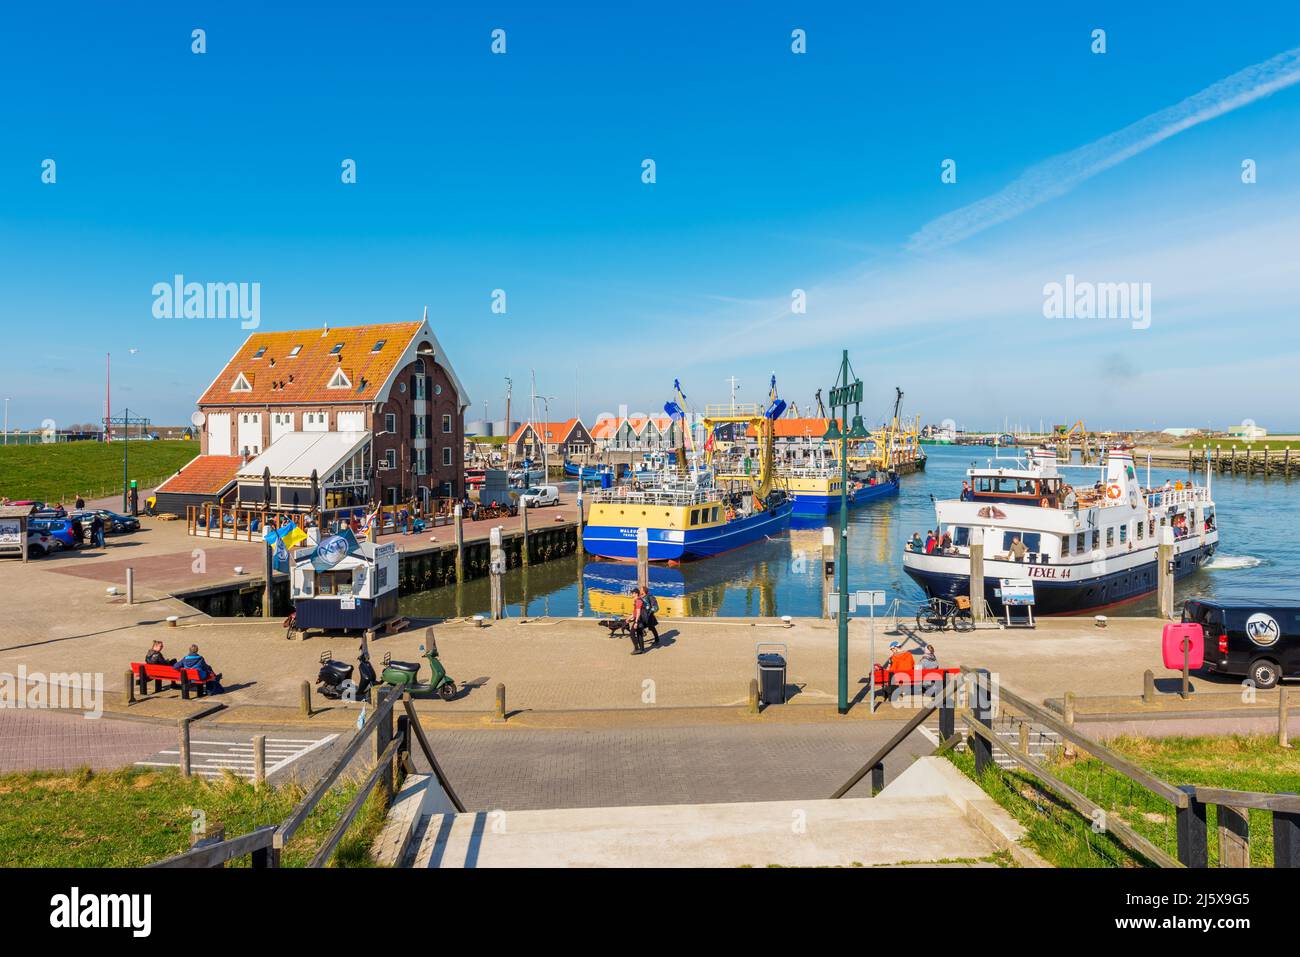 Port de pêche d'Oudeschild, ville de la province néerlandaise du Nord de la Hollande. Elle fait partie de la municipalité de Texel Banque D'Images